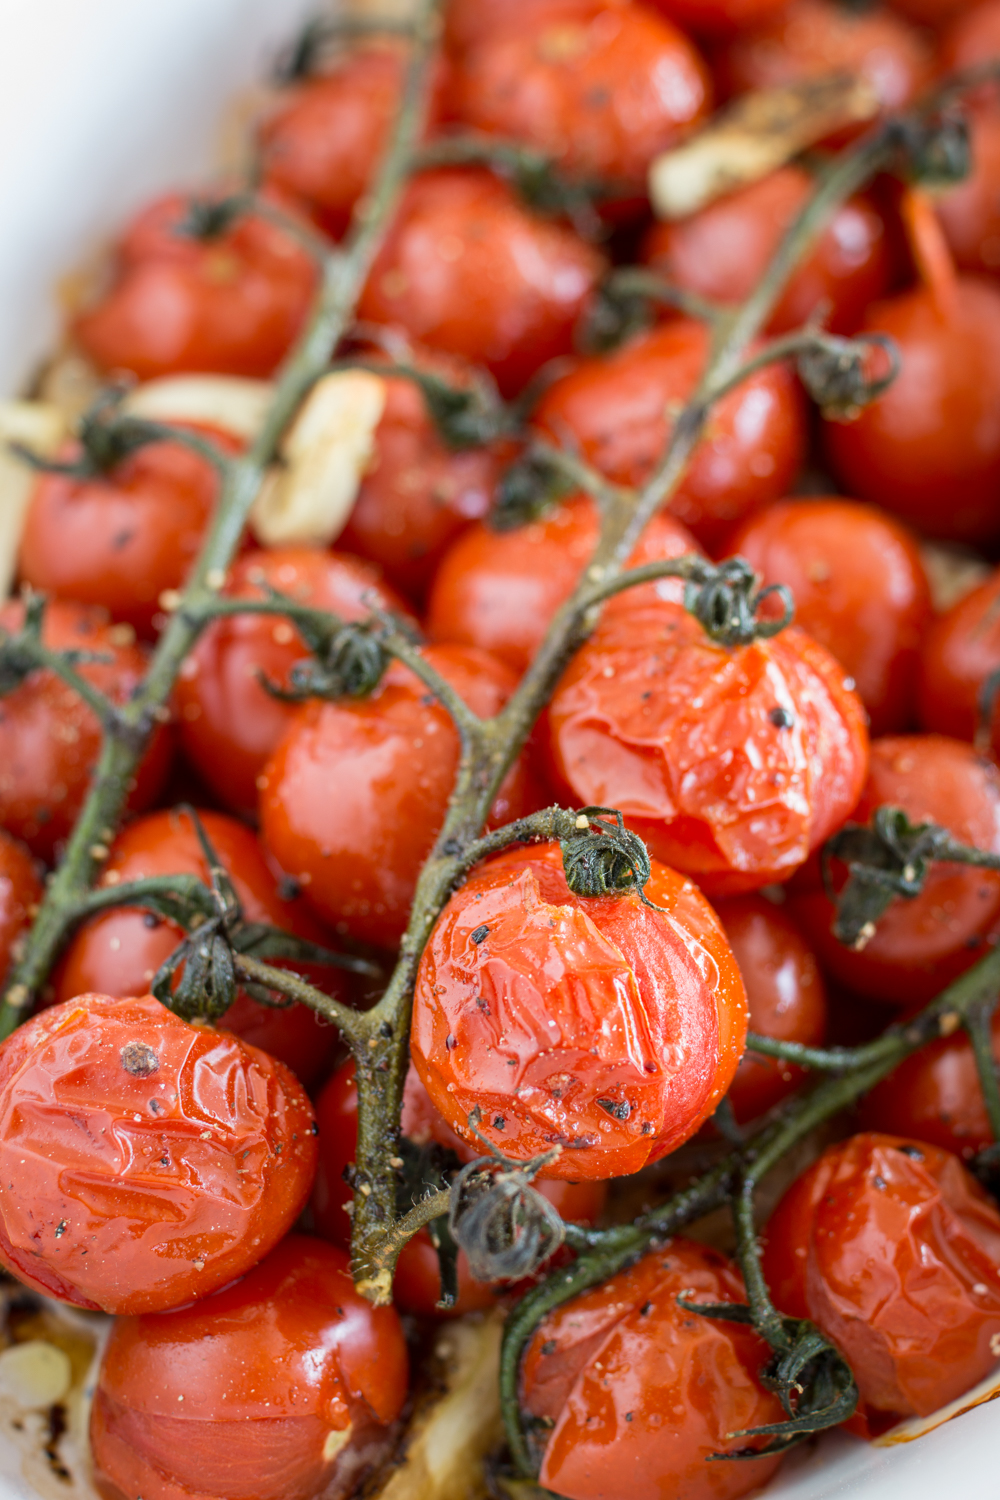 Im Ofen geröstete Tomaten | Schnelle Beilage, einfaches Rezept, mediterranes Geschmackserlebnis